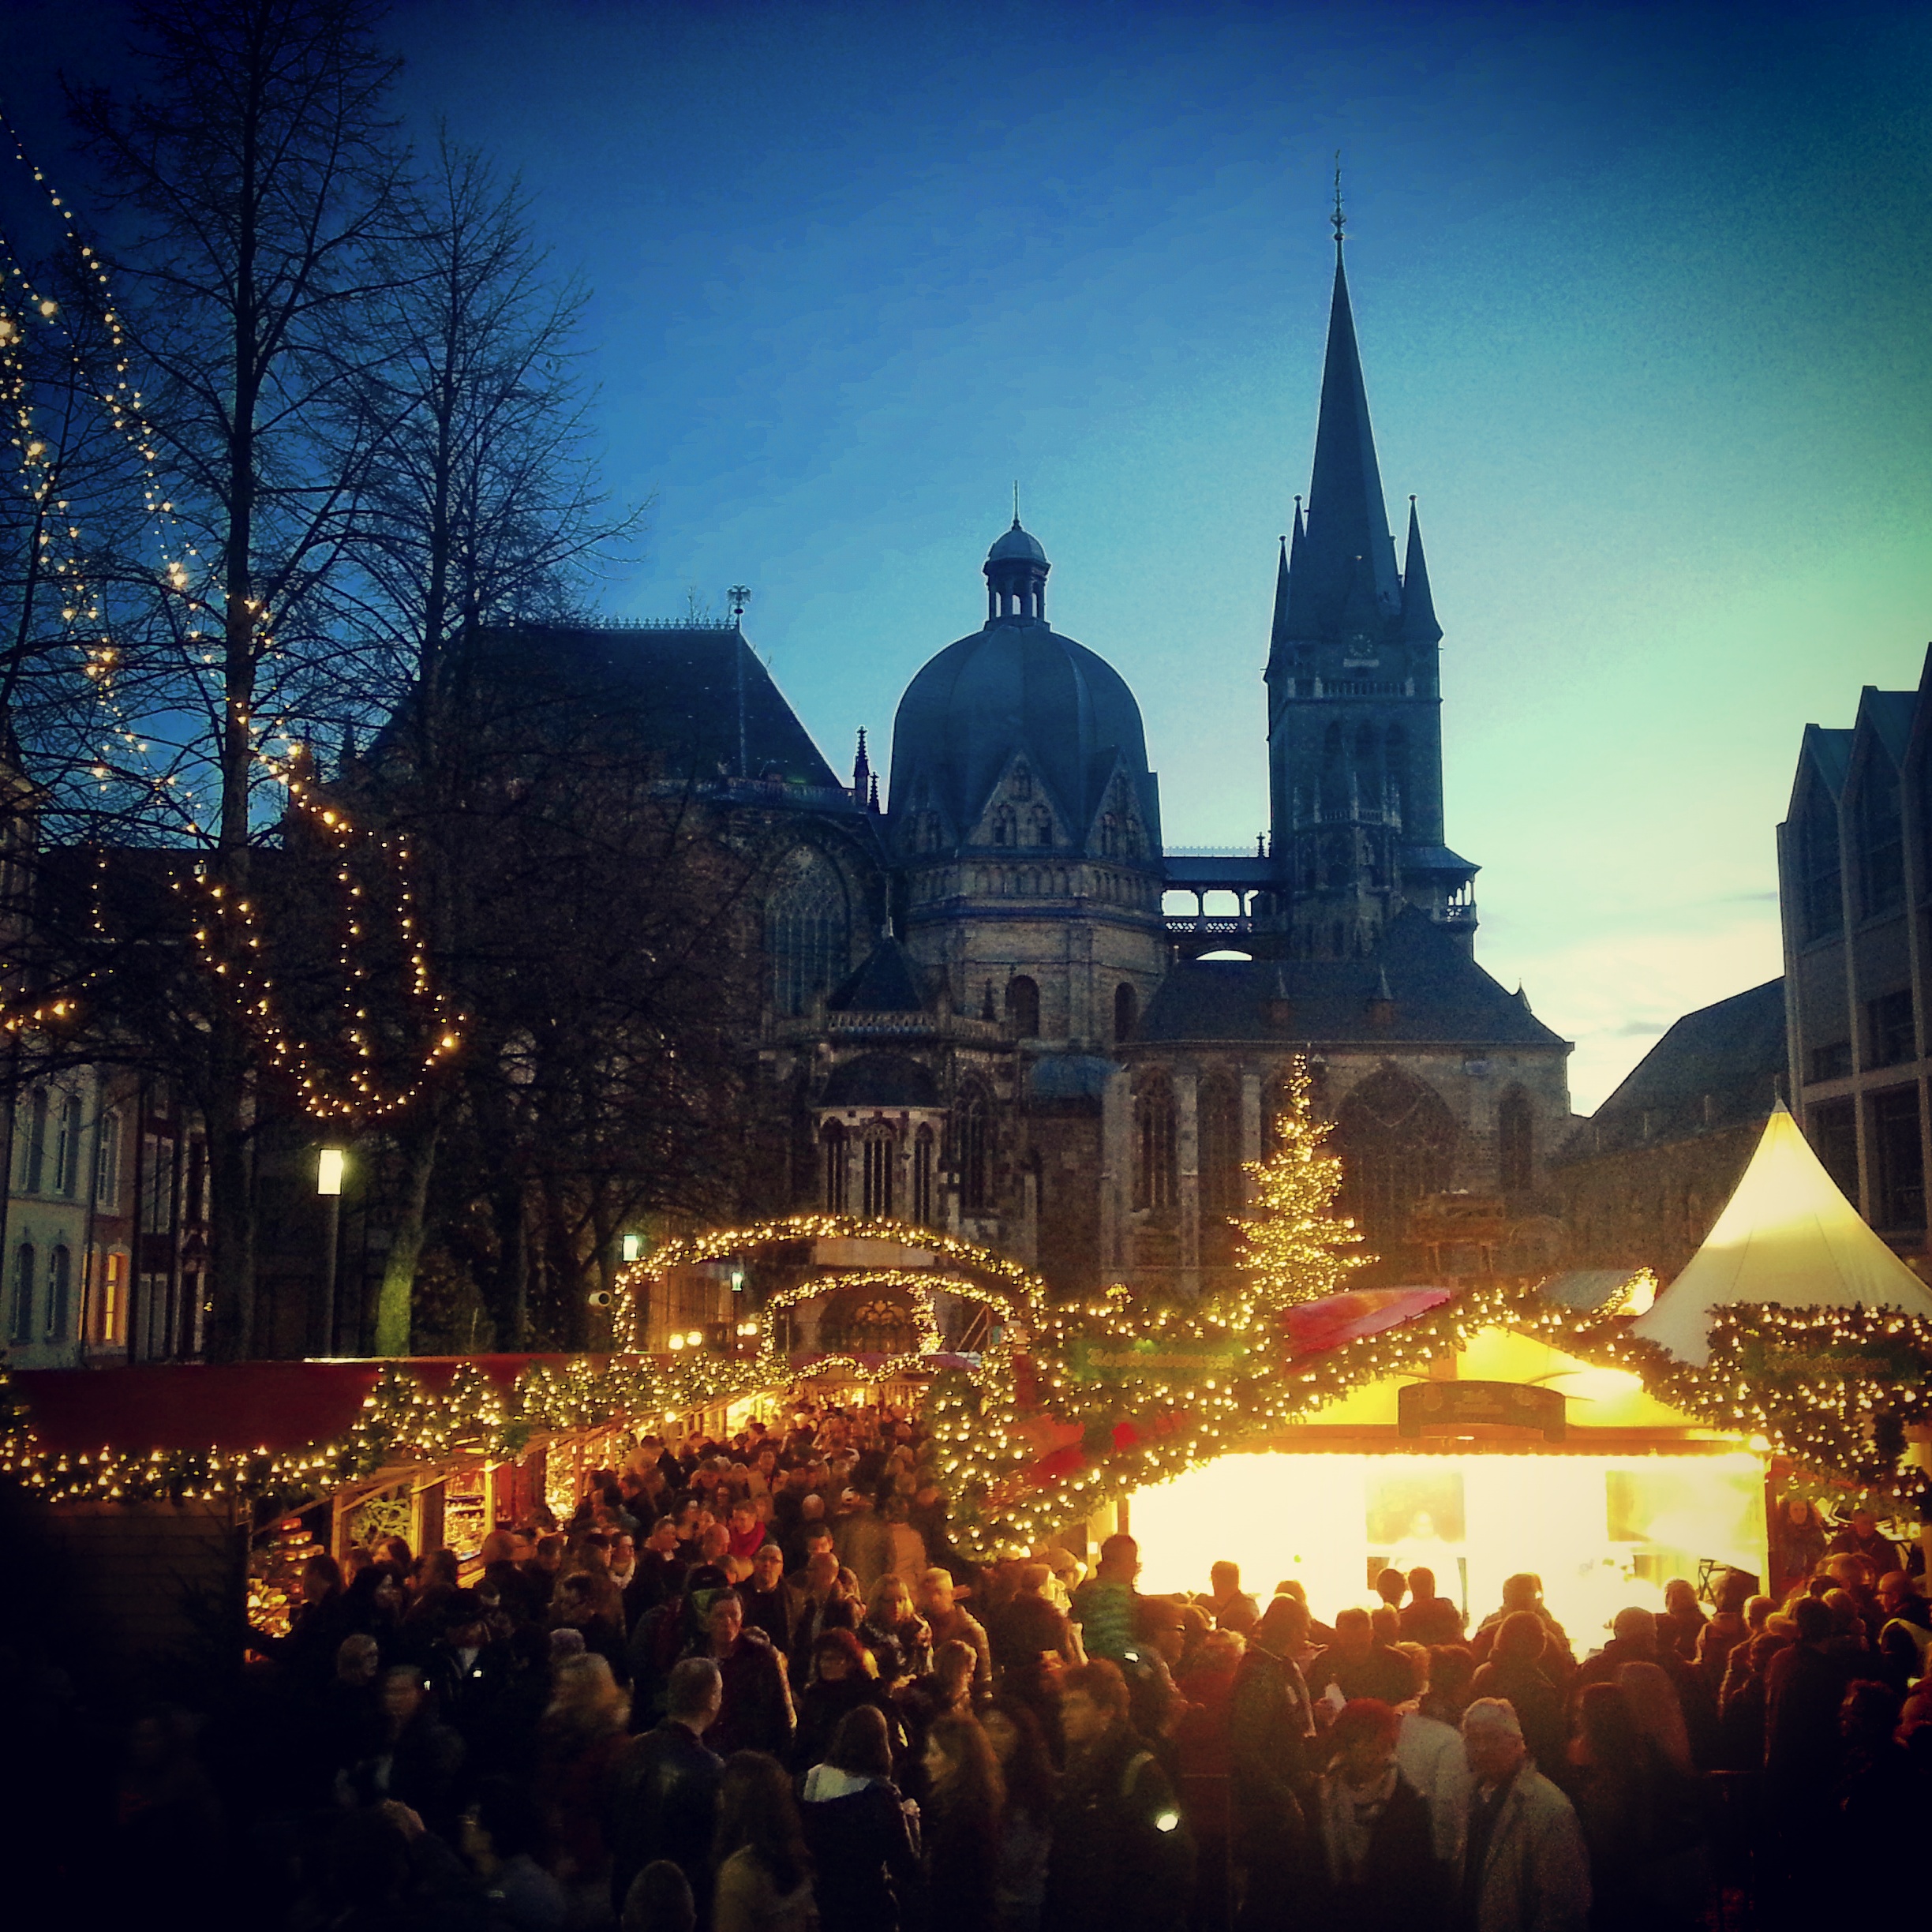 The Christmas Markets, Aachen